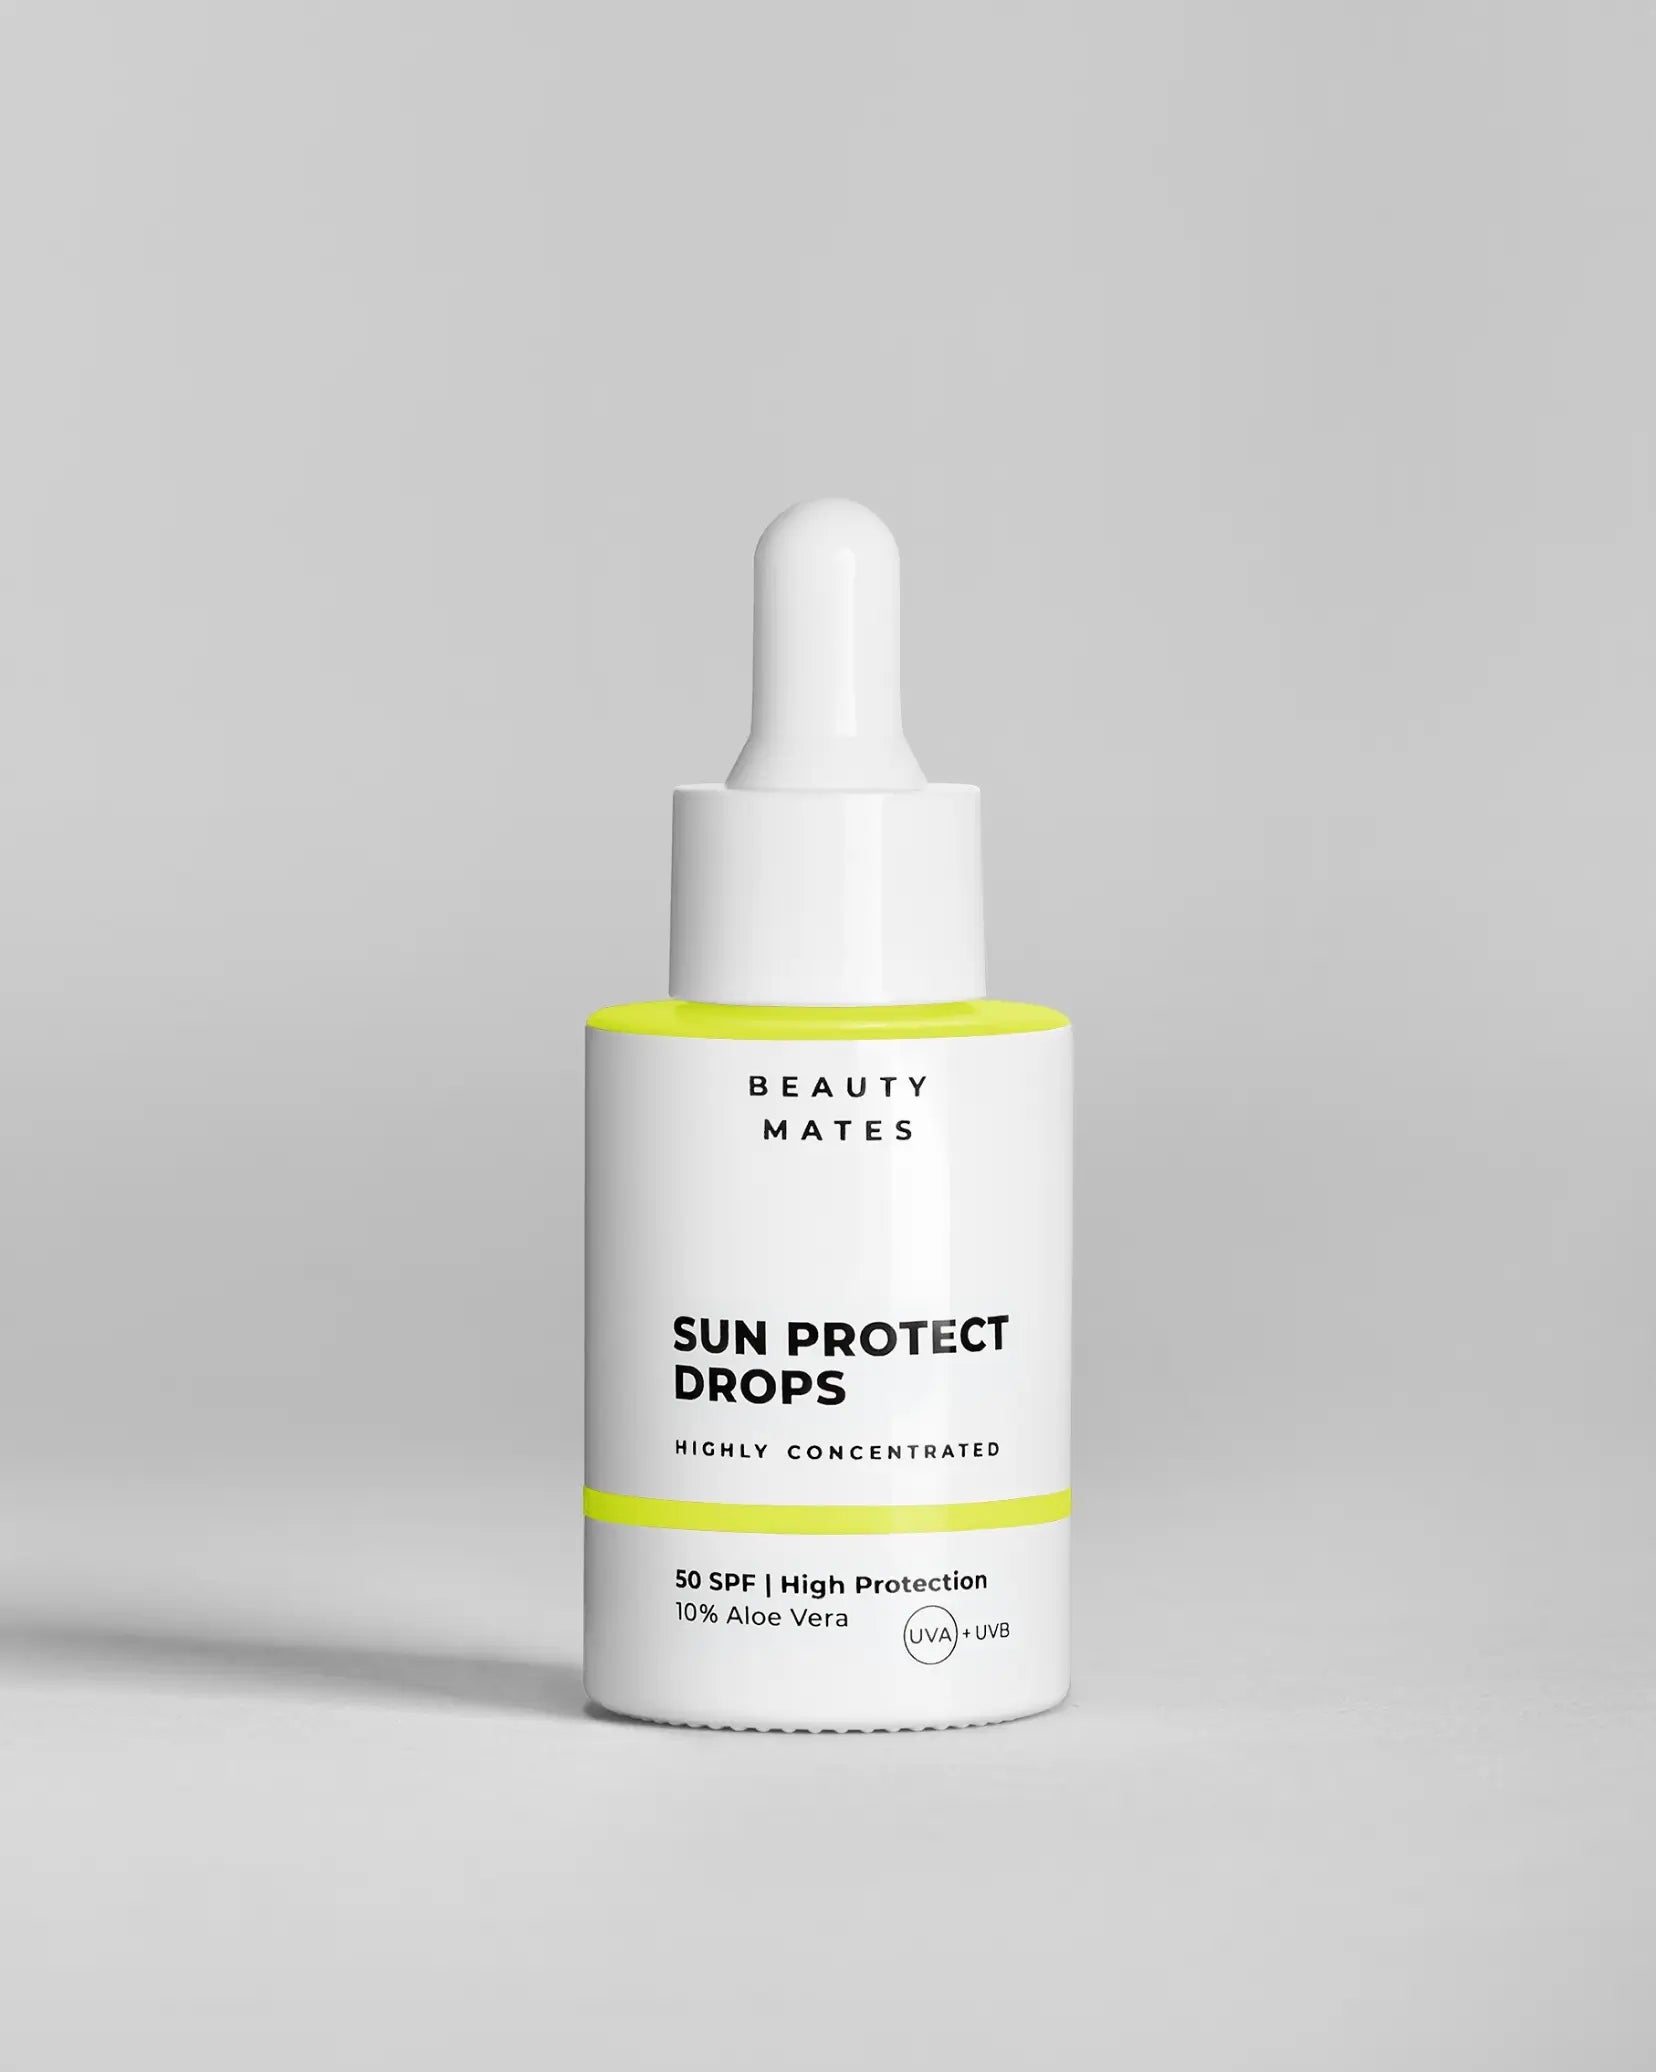 Beauty Mates Sun Protect Drops - Hochkonzentrierter Sonnenschutz mit SPF 50 und 10% Aloe Vera.